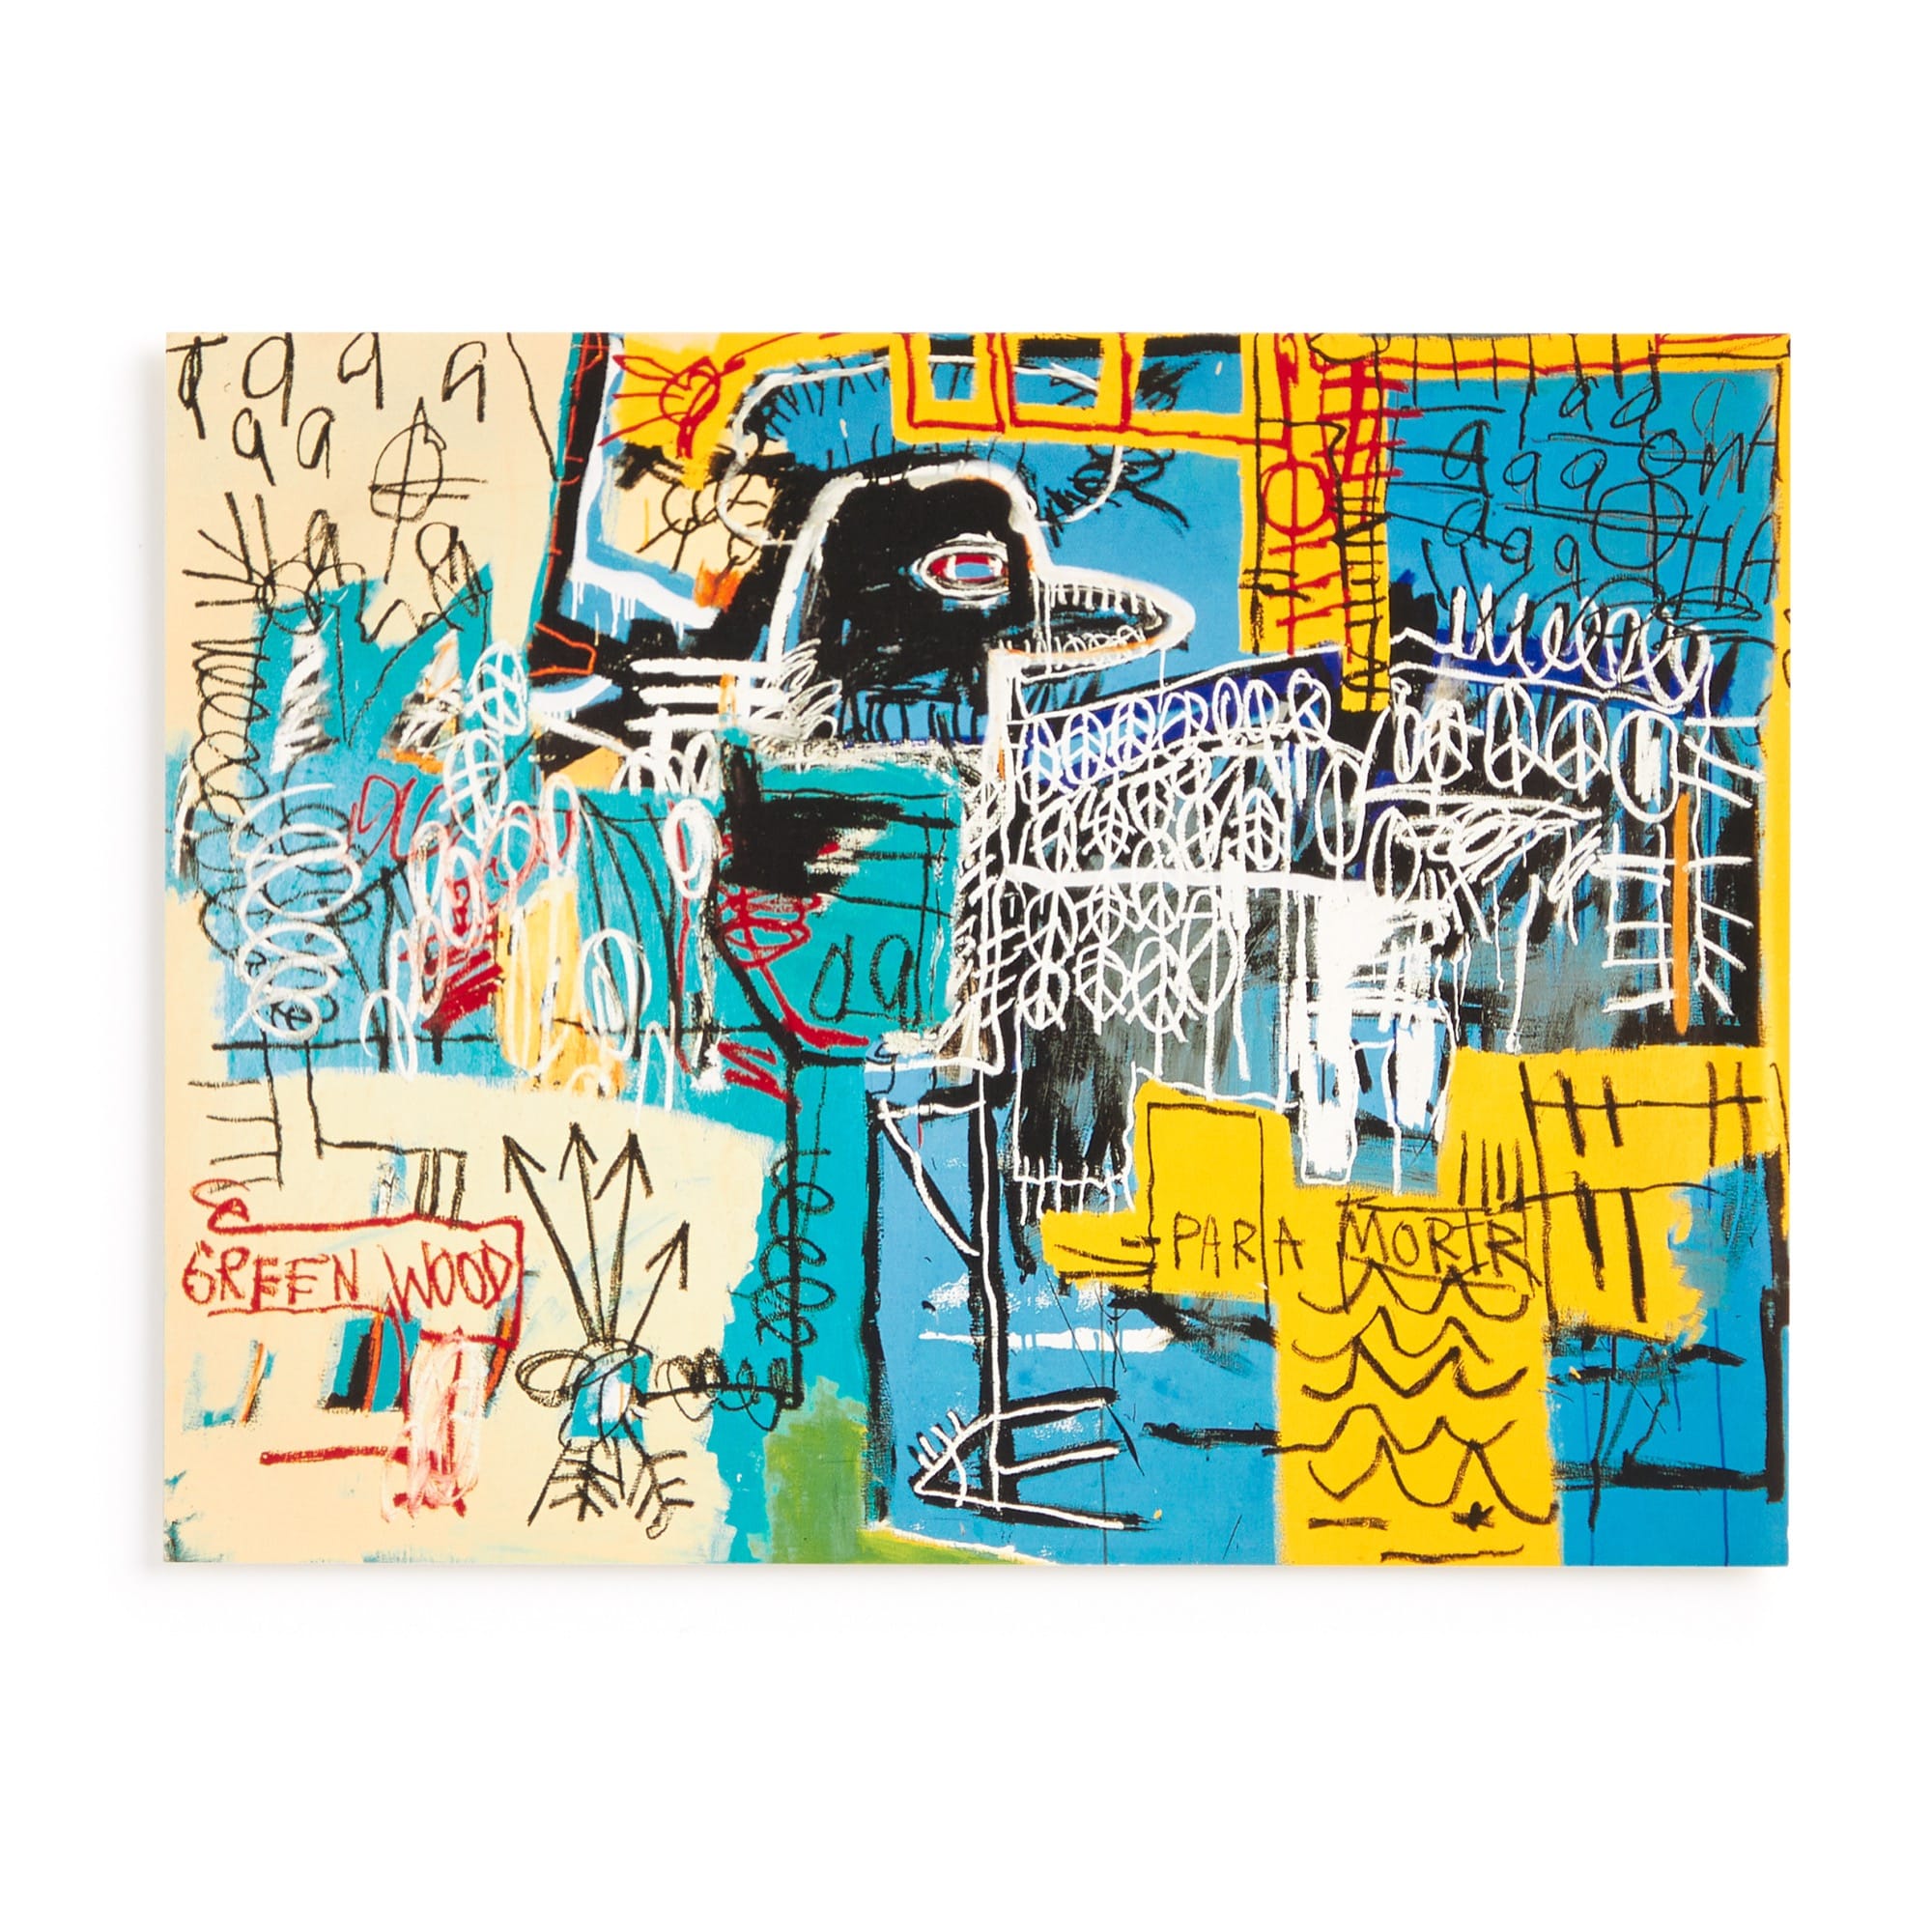 Basquiat Bird on Money 500 Piece Book Puzzle – Galison